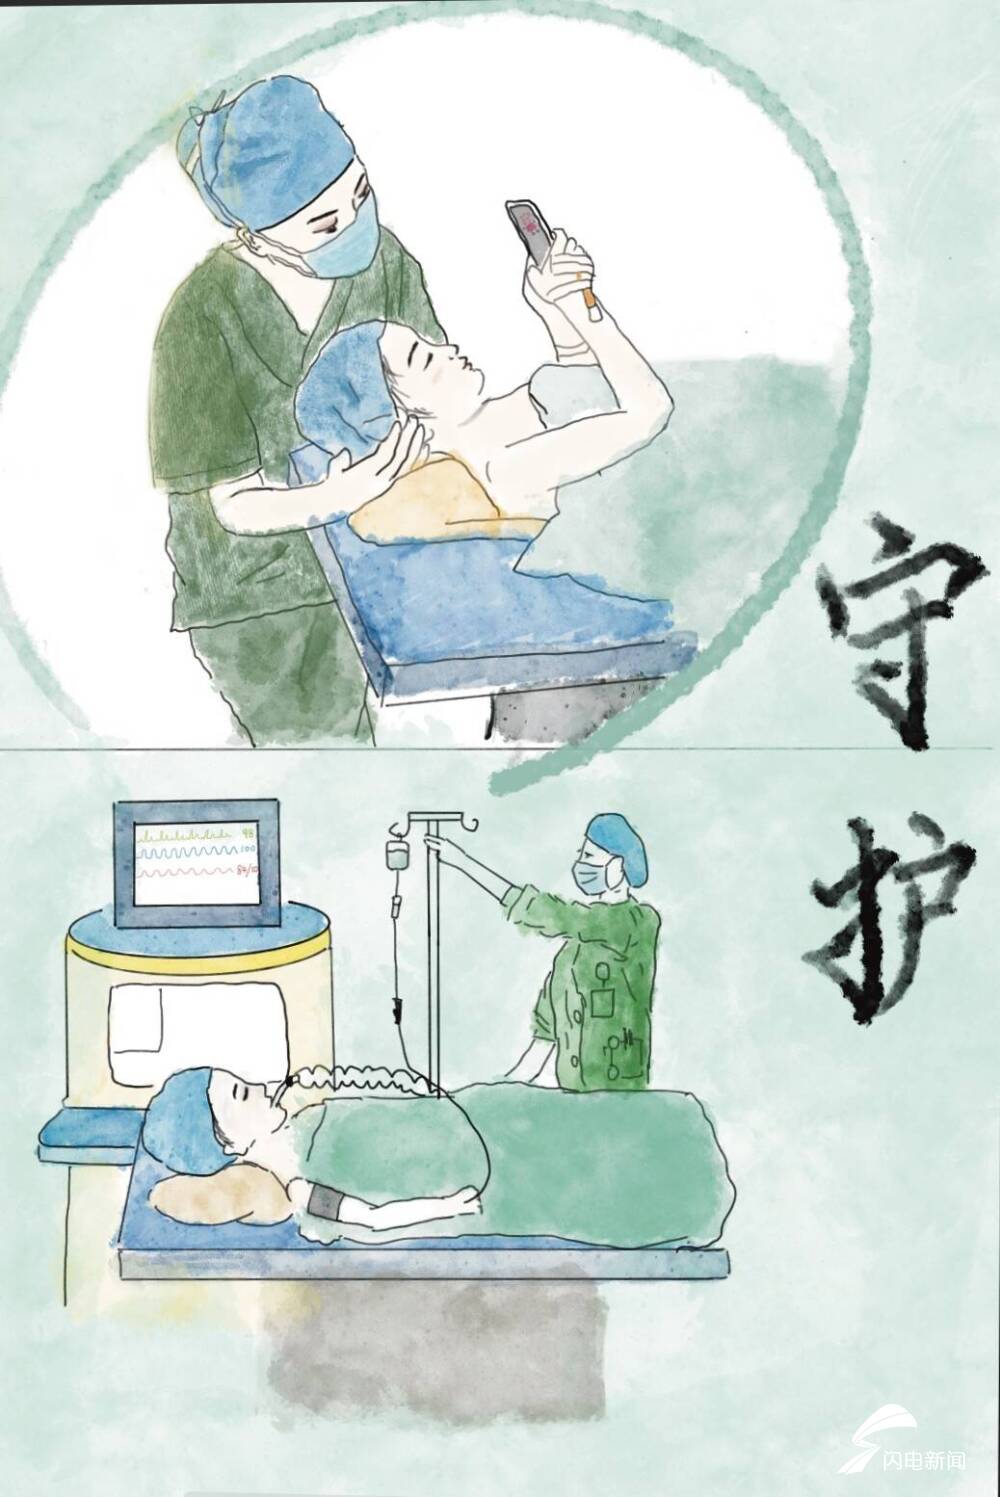 微视频玩具车开进手术室济南医护这组九宫格创意漫画暖心了